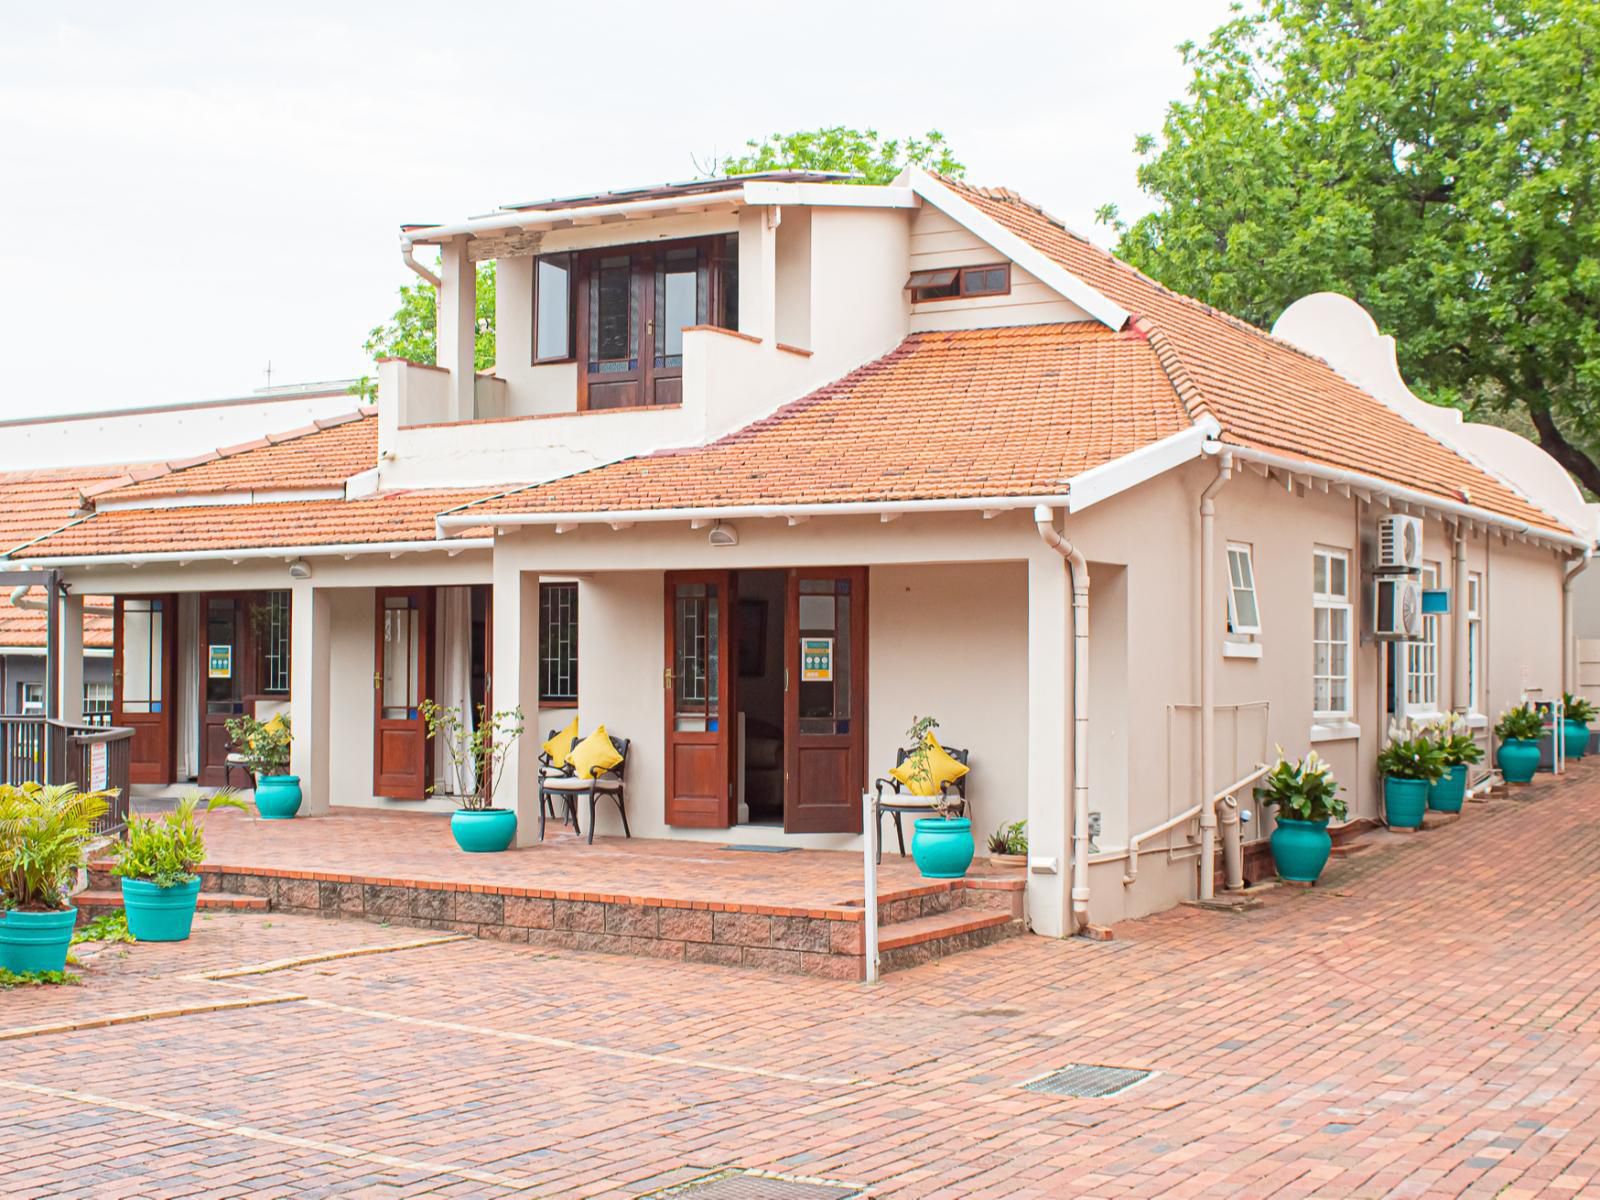 Roseland House Glenwood Durban Kwazulu Natal South Africa House, Building, Architecture